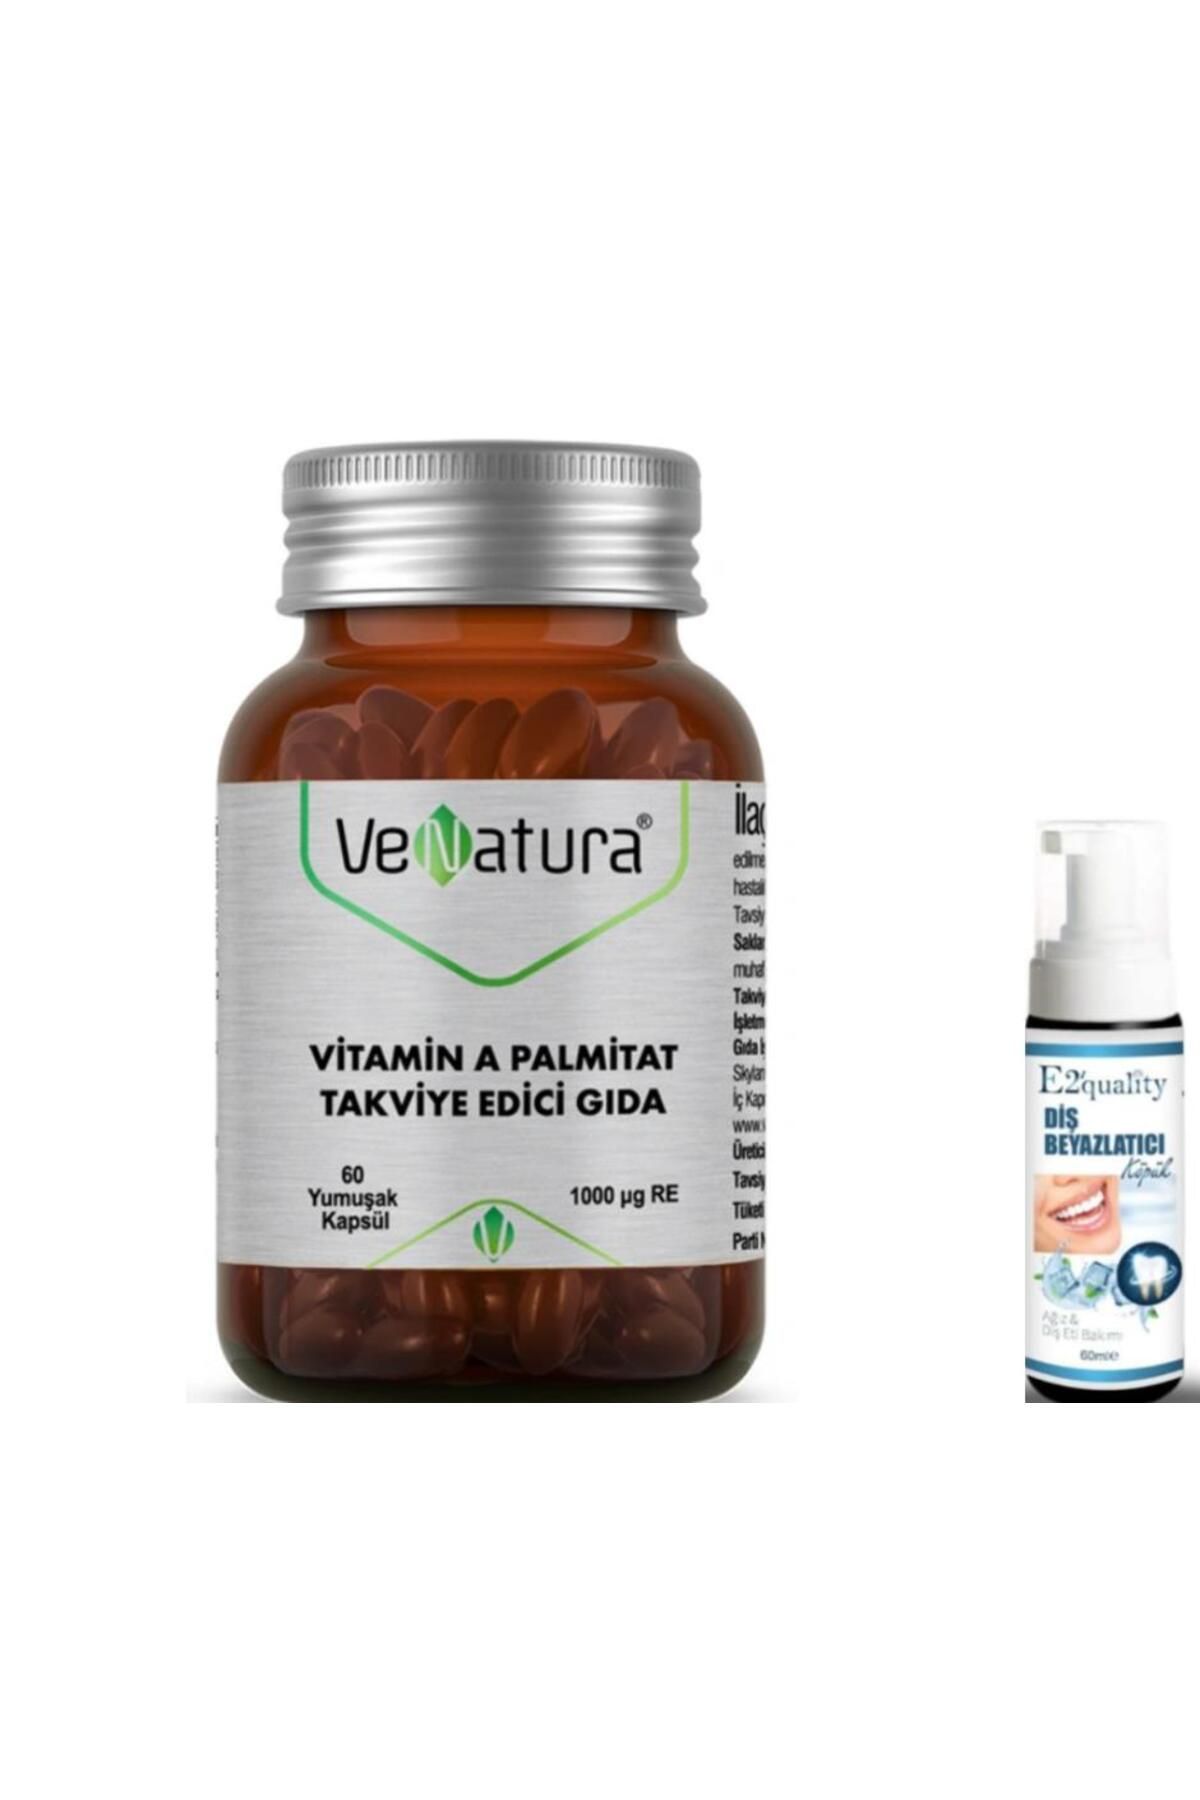 Vaseline VeNatura Vitamin A Palmitat Takviye Edici Gıda 60 Yumuşak Kapsül- Diş Beyazlatıcı Köpük Hediye